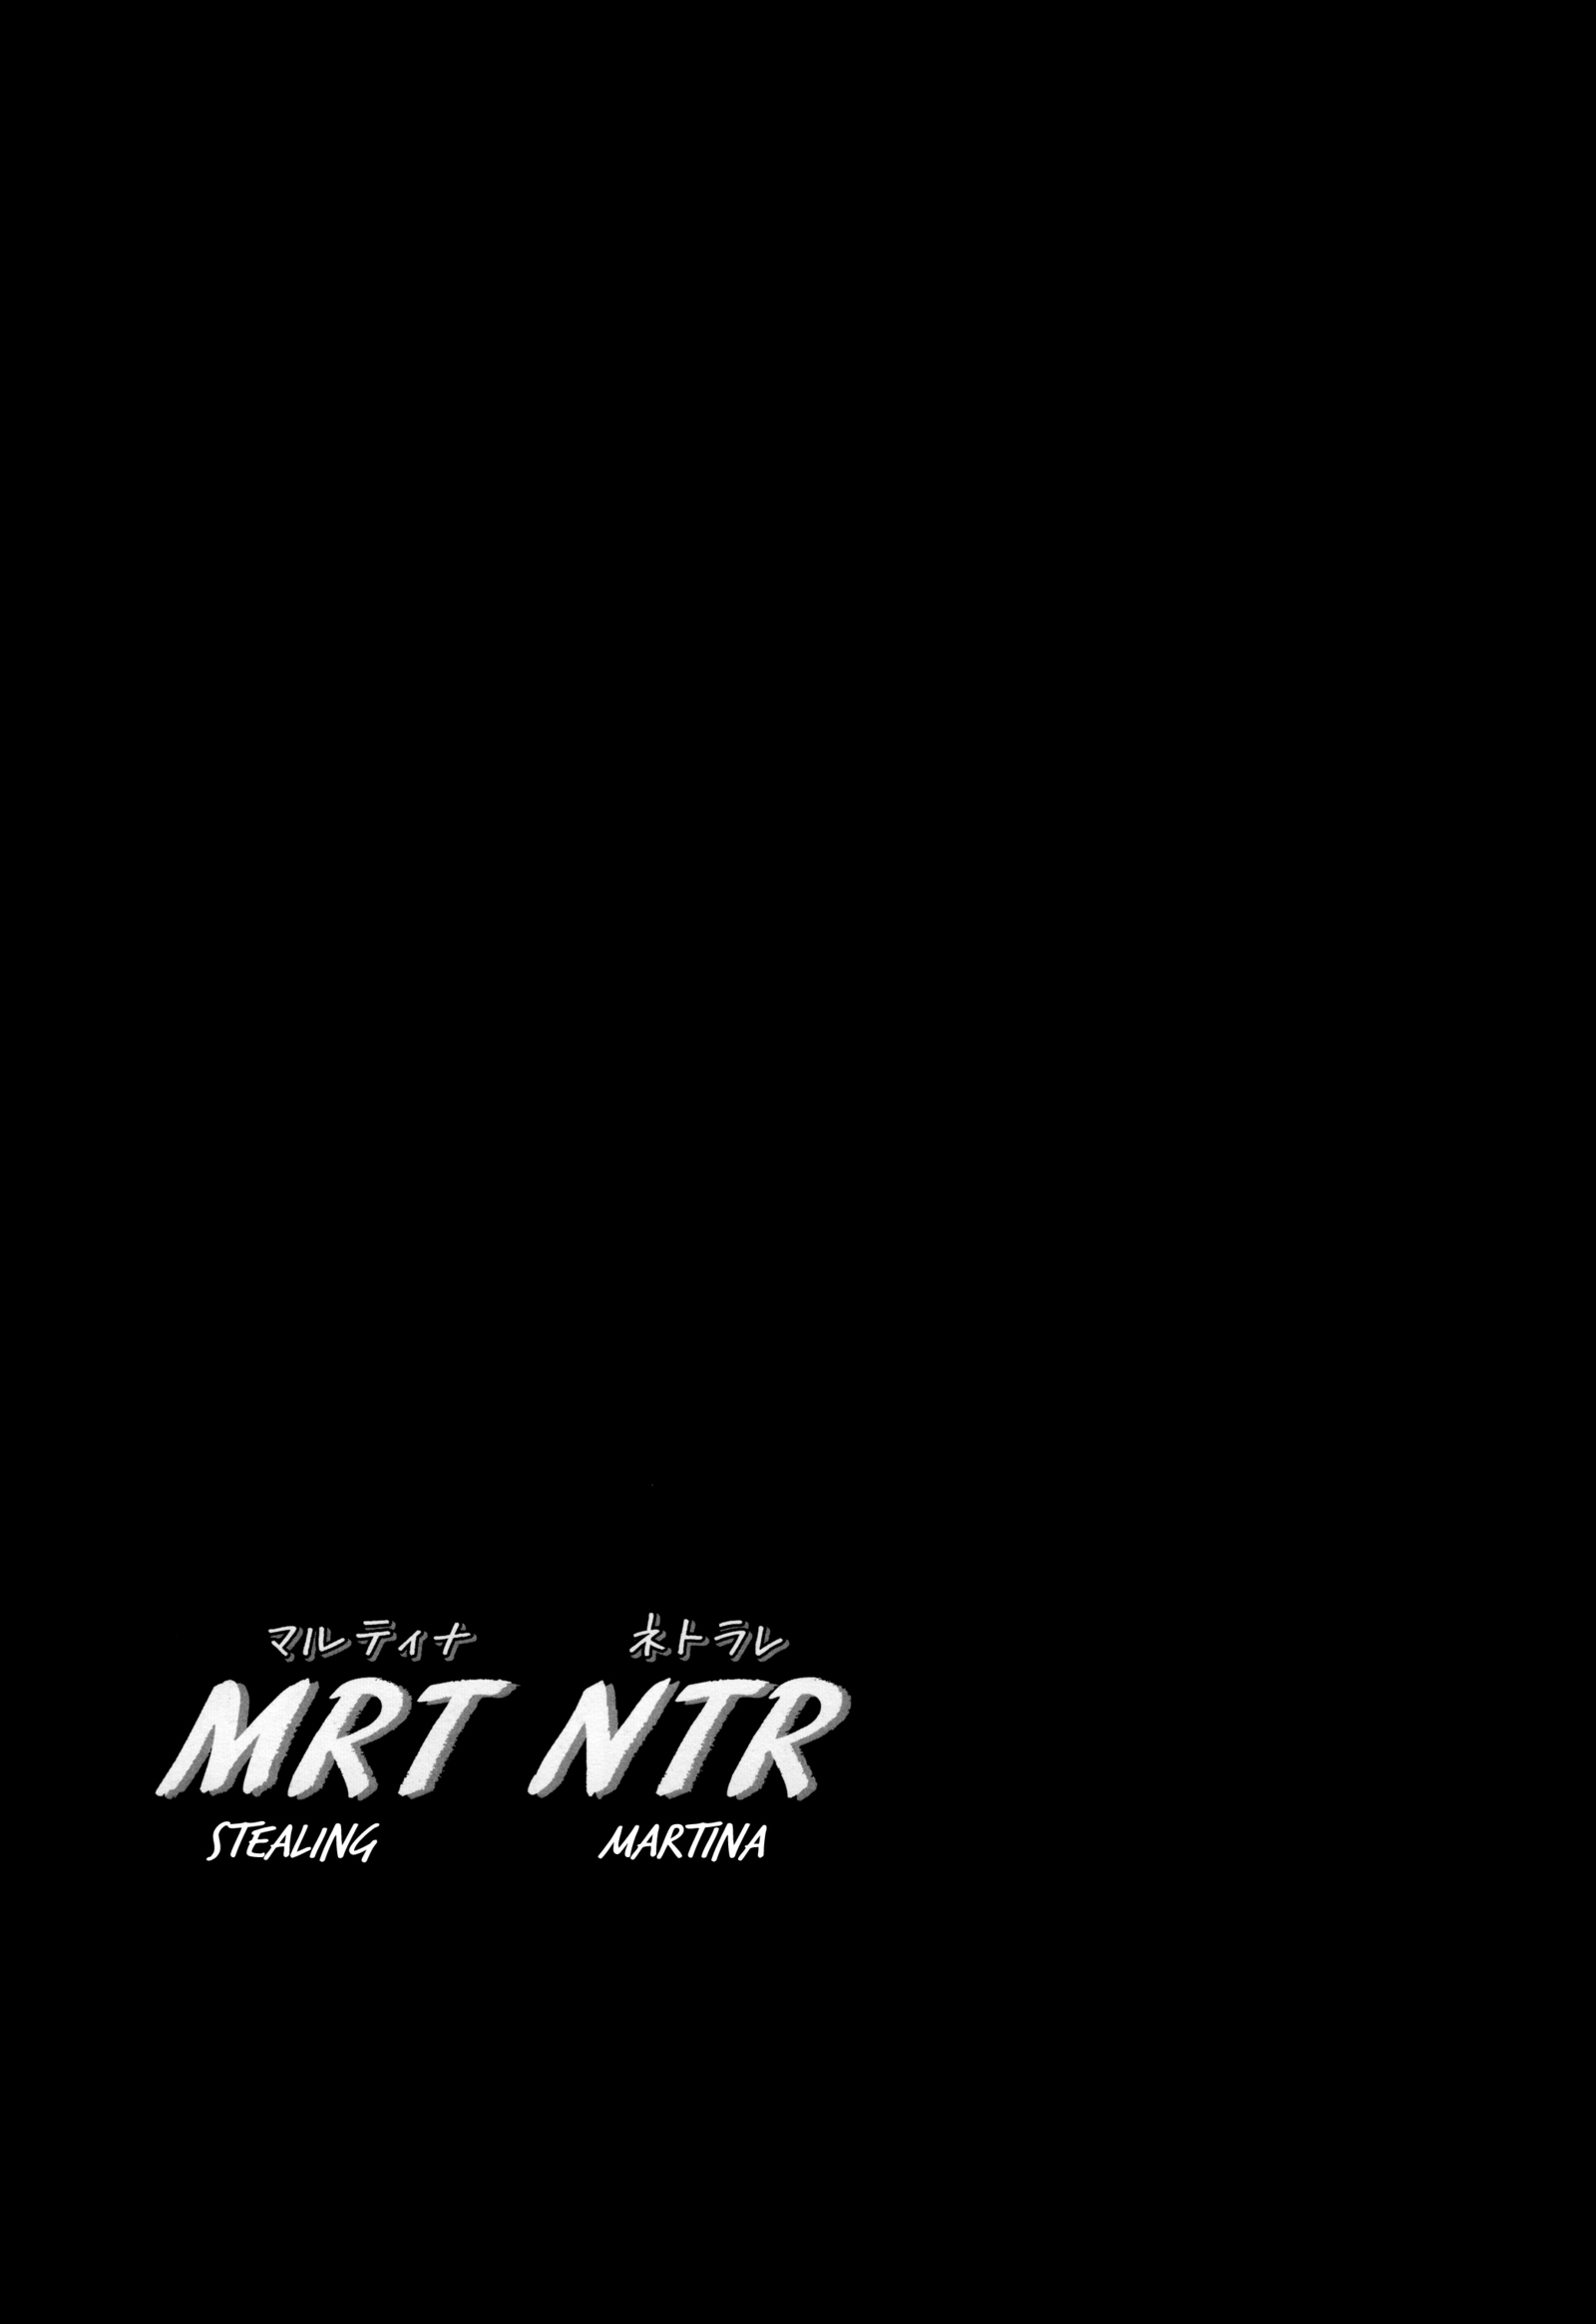 MRTNTRマルティナネトラレ